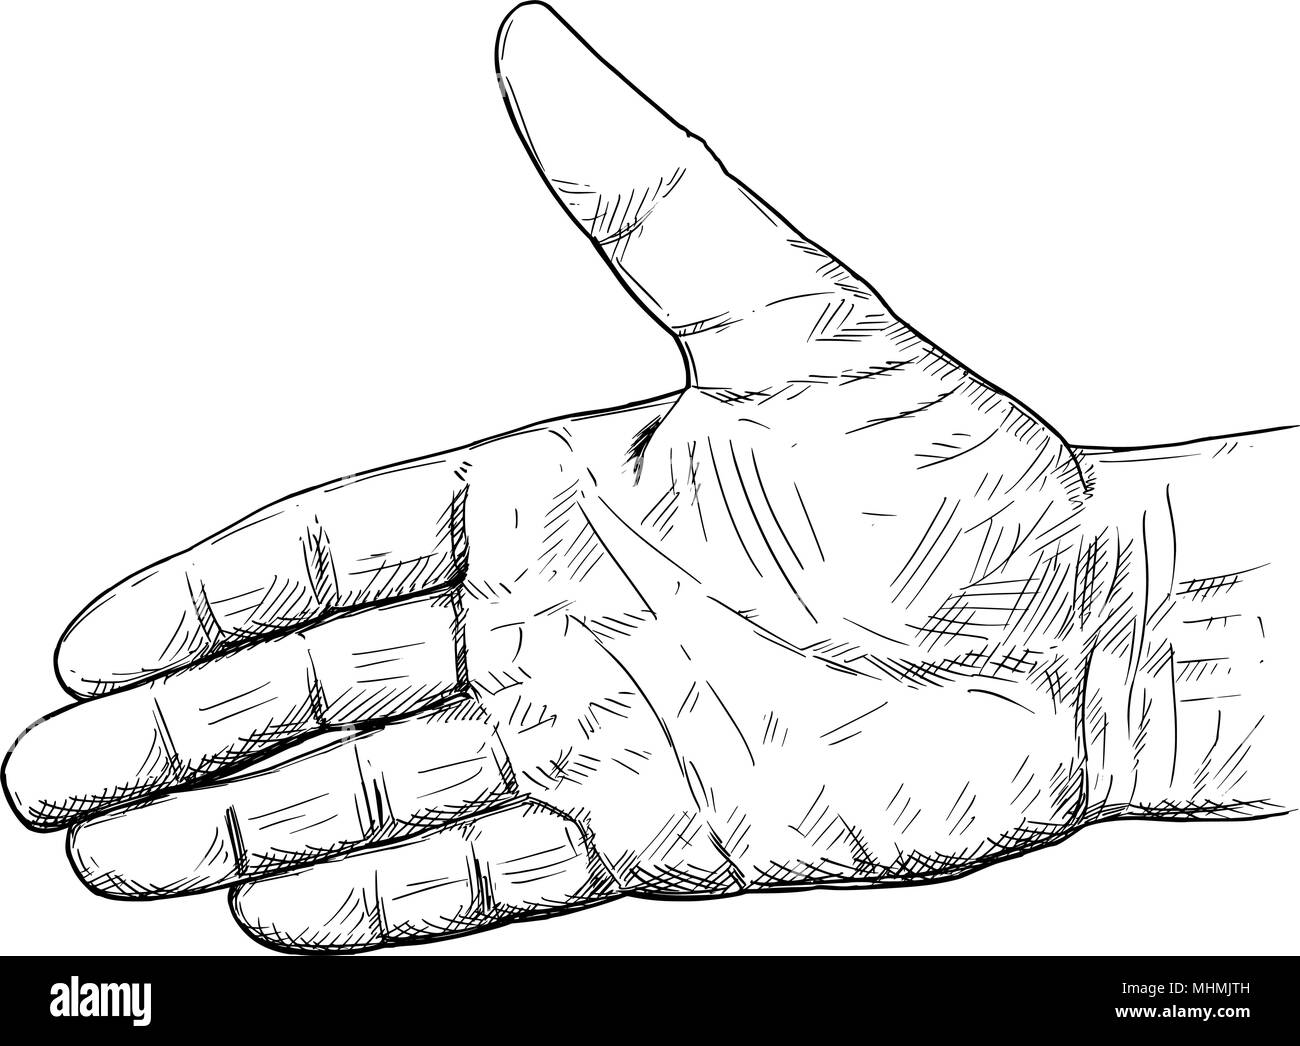 Vektor künstlerische Abbildung oder Zeichnung von Hand Öffnen für Handshake Geste Stock Vektor